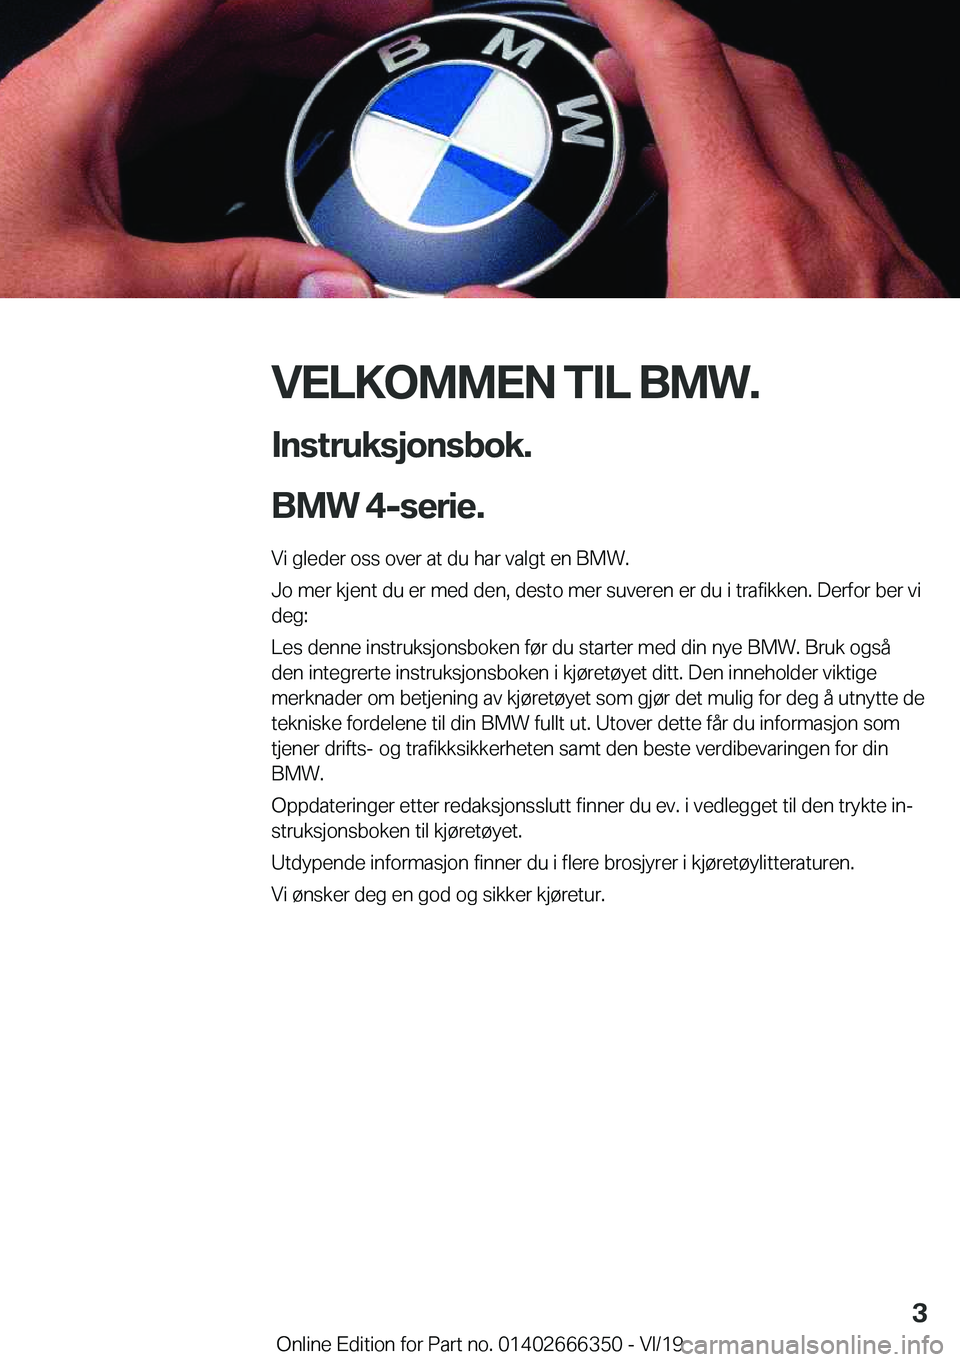 BMW 4 SERIES COUPE 2020  InstruksjonsbØker (in Norwegian) �V�E�L�K�O�M�M�E�N��T�I�L��B�M�W�.�I�n�s�t�r�u�k�s�j�o�n�s�b�o�k�.
�B�M�W��4�-�s�e�r�i�e�.�
�V�i��g�l�e�d�e�r��o�s�s��o�v�e�r��a�t��d�u��h�a�r��v�a�l�g�t��e�n��B�M�W�.
�J�o��m�e�r��k�j�